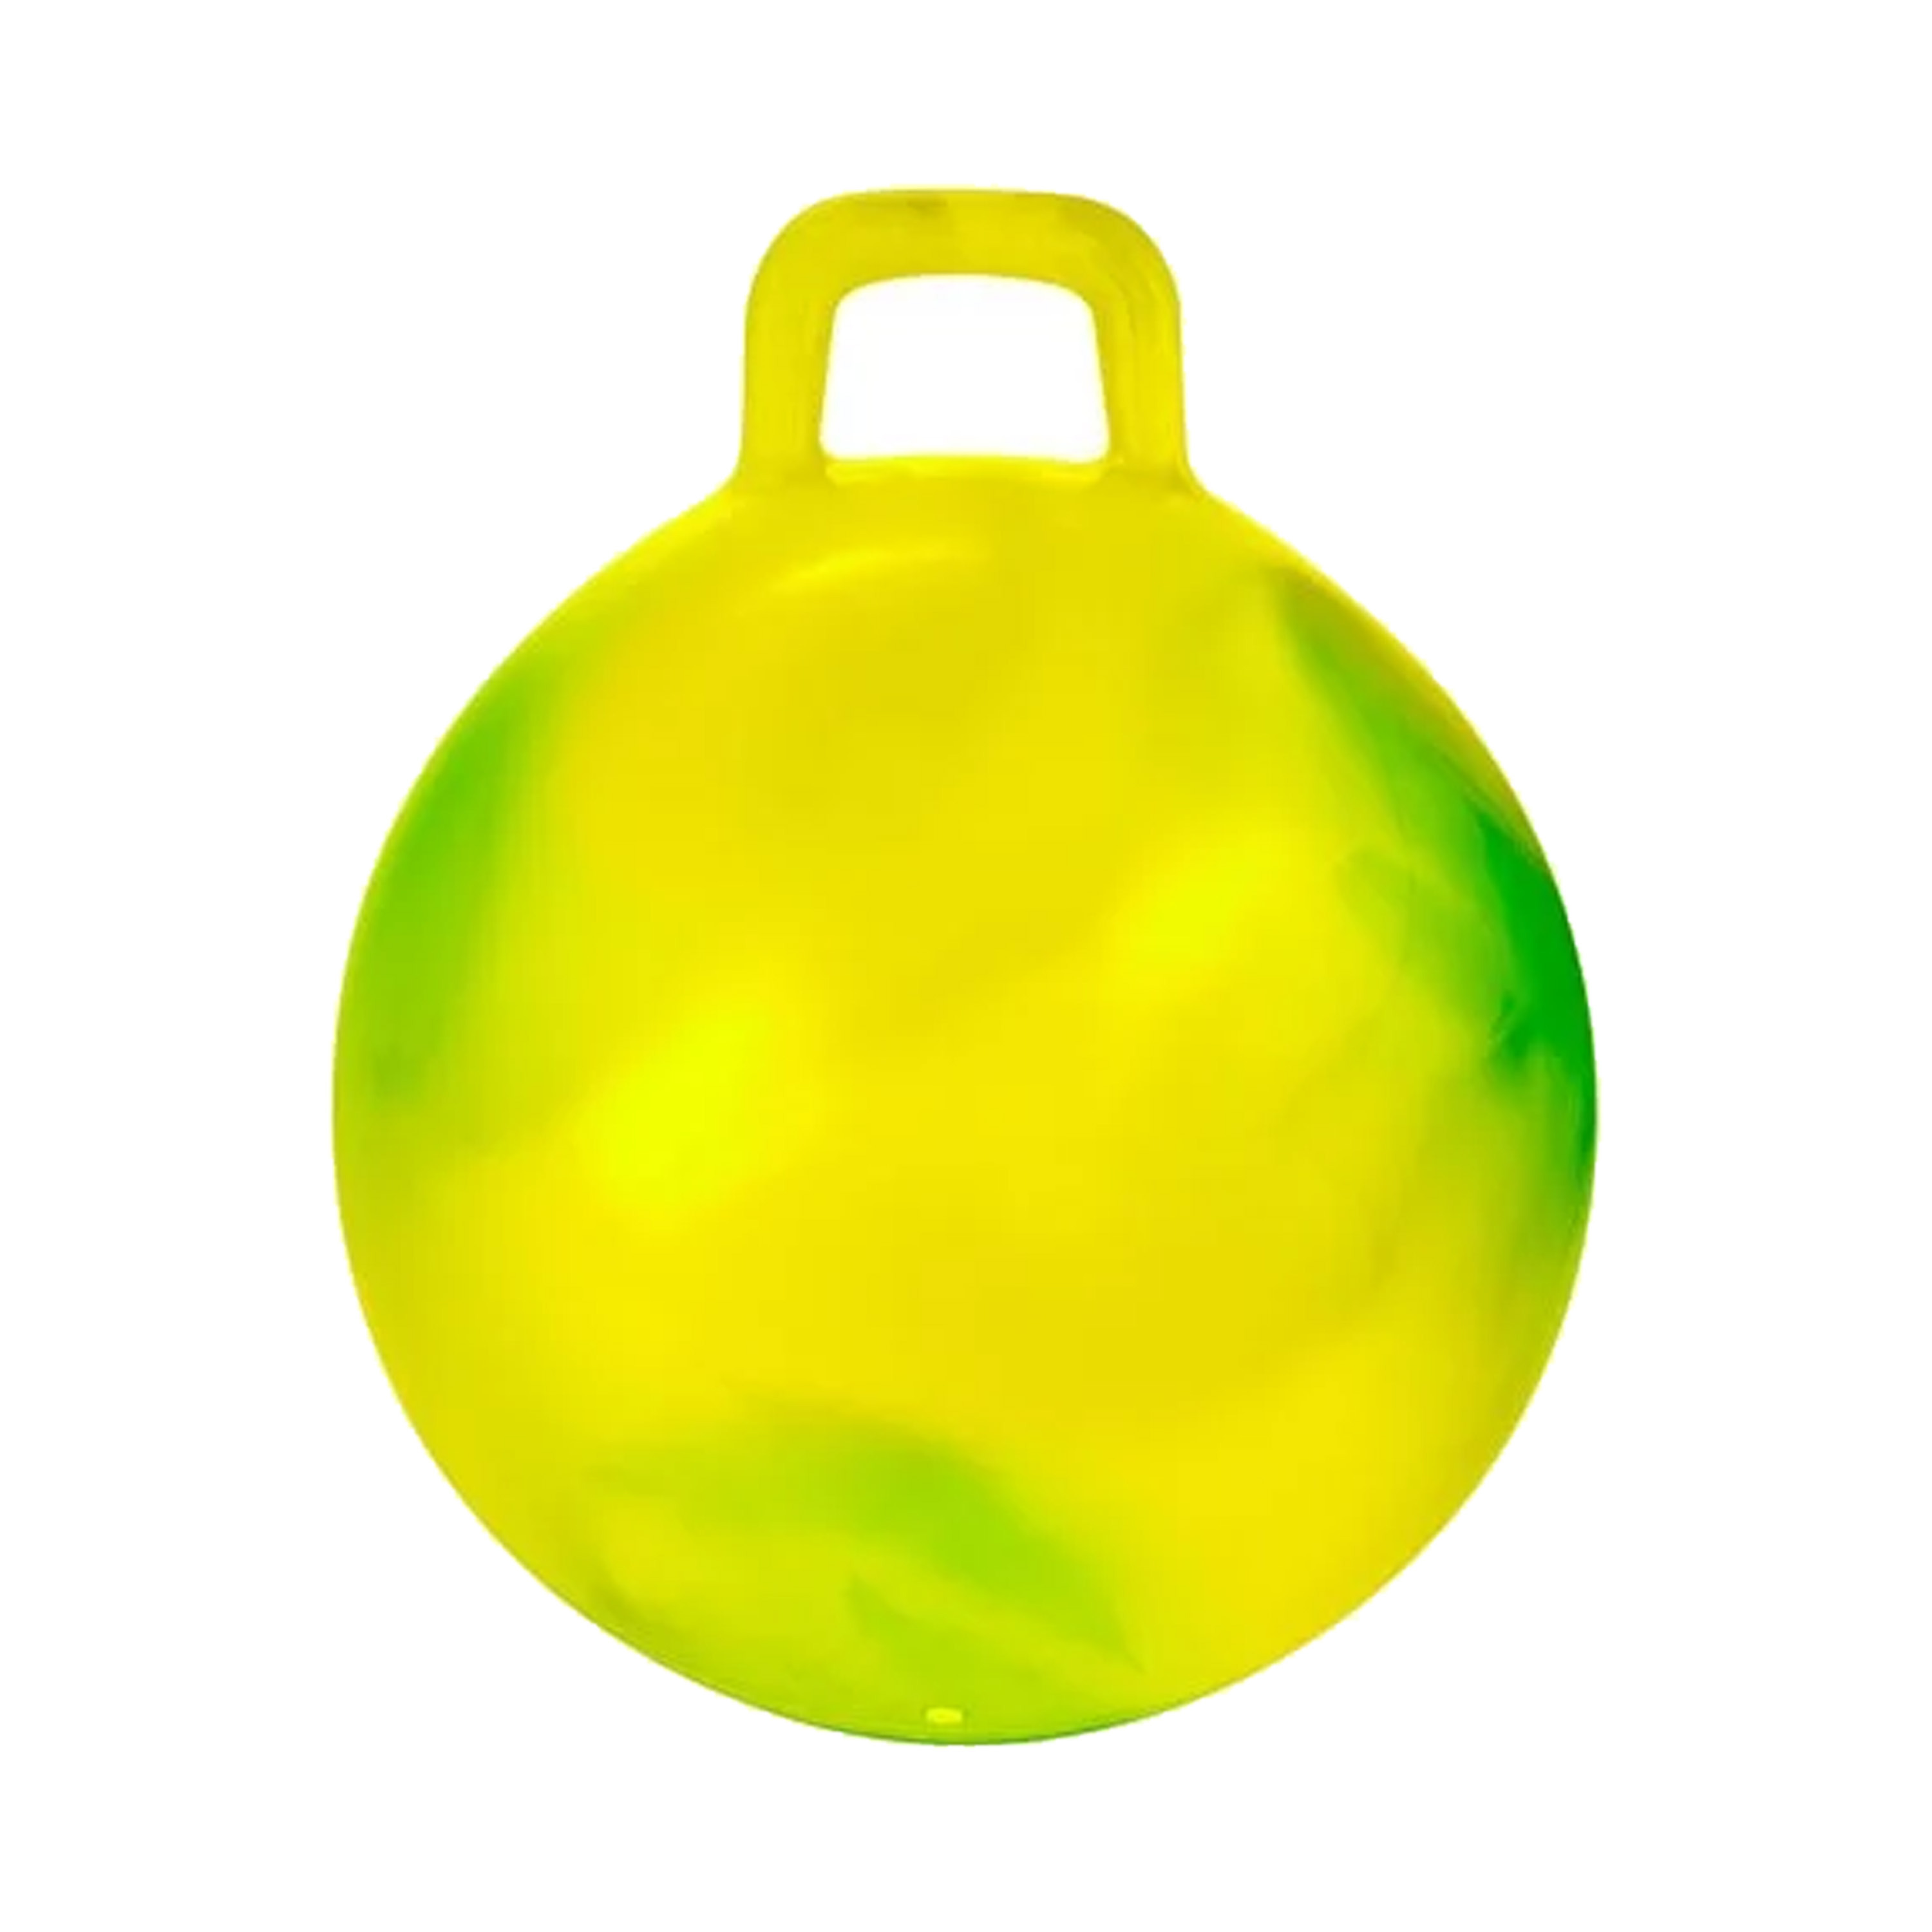 Skippybal marble geel-groen D45 cm buitenspeelgoed voor kinderen